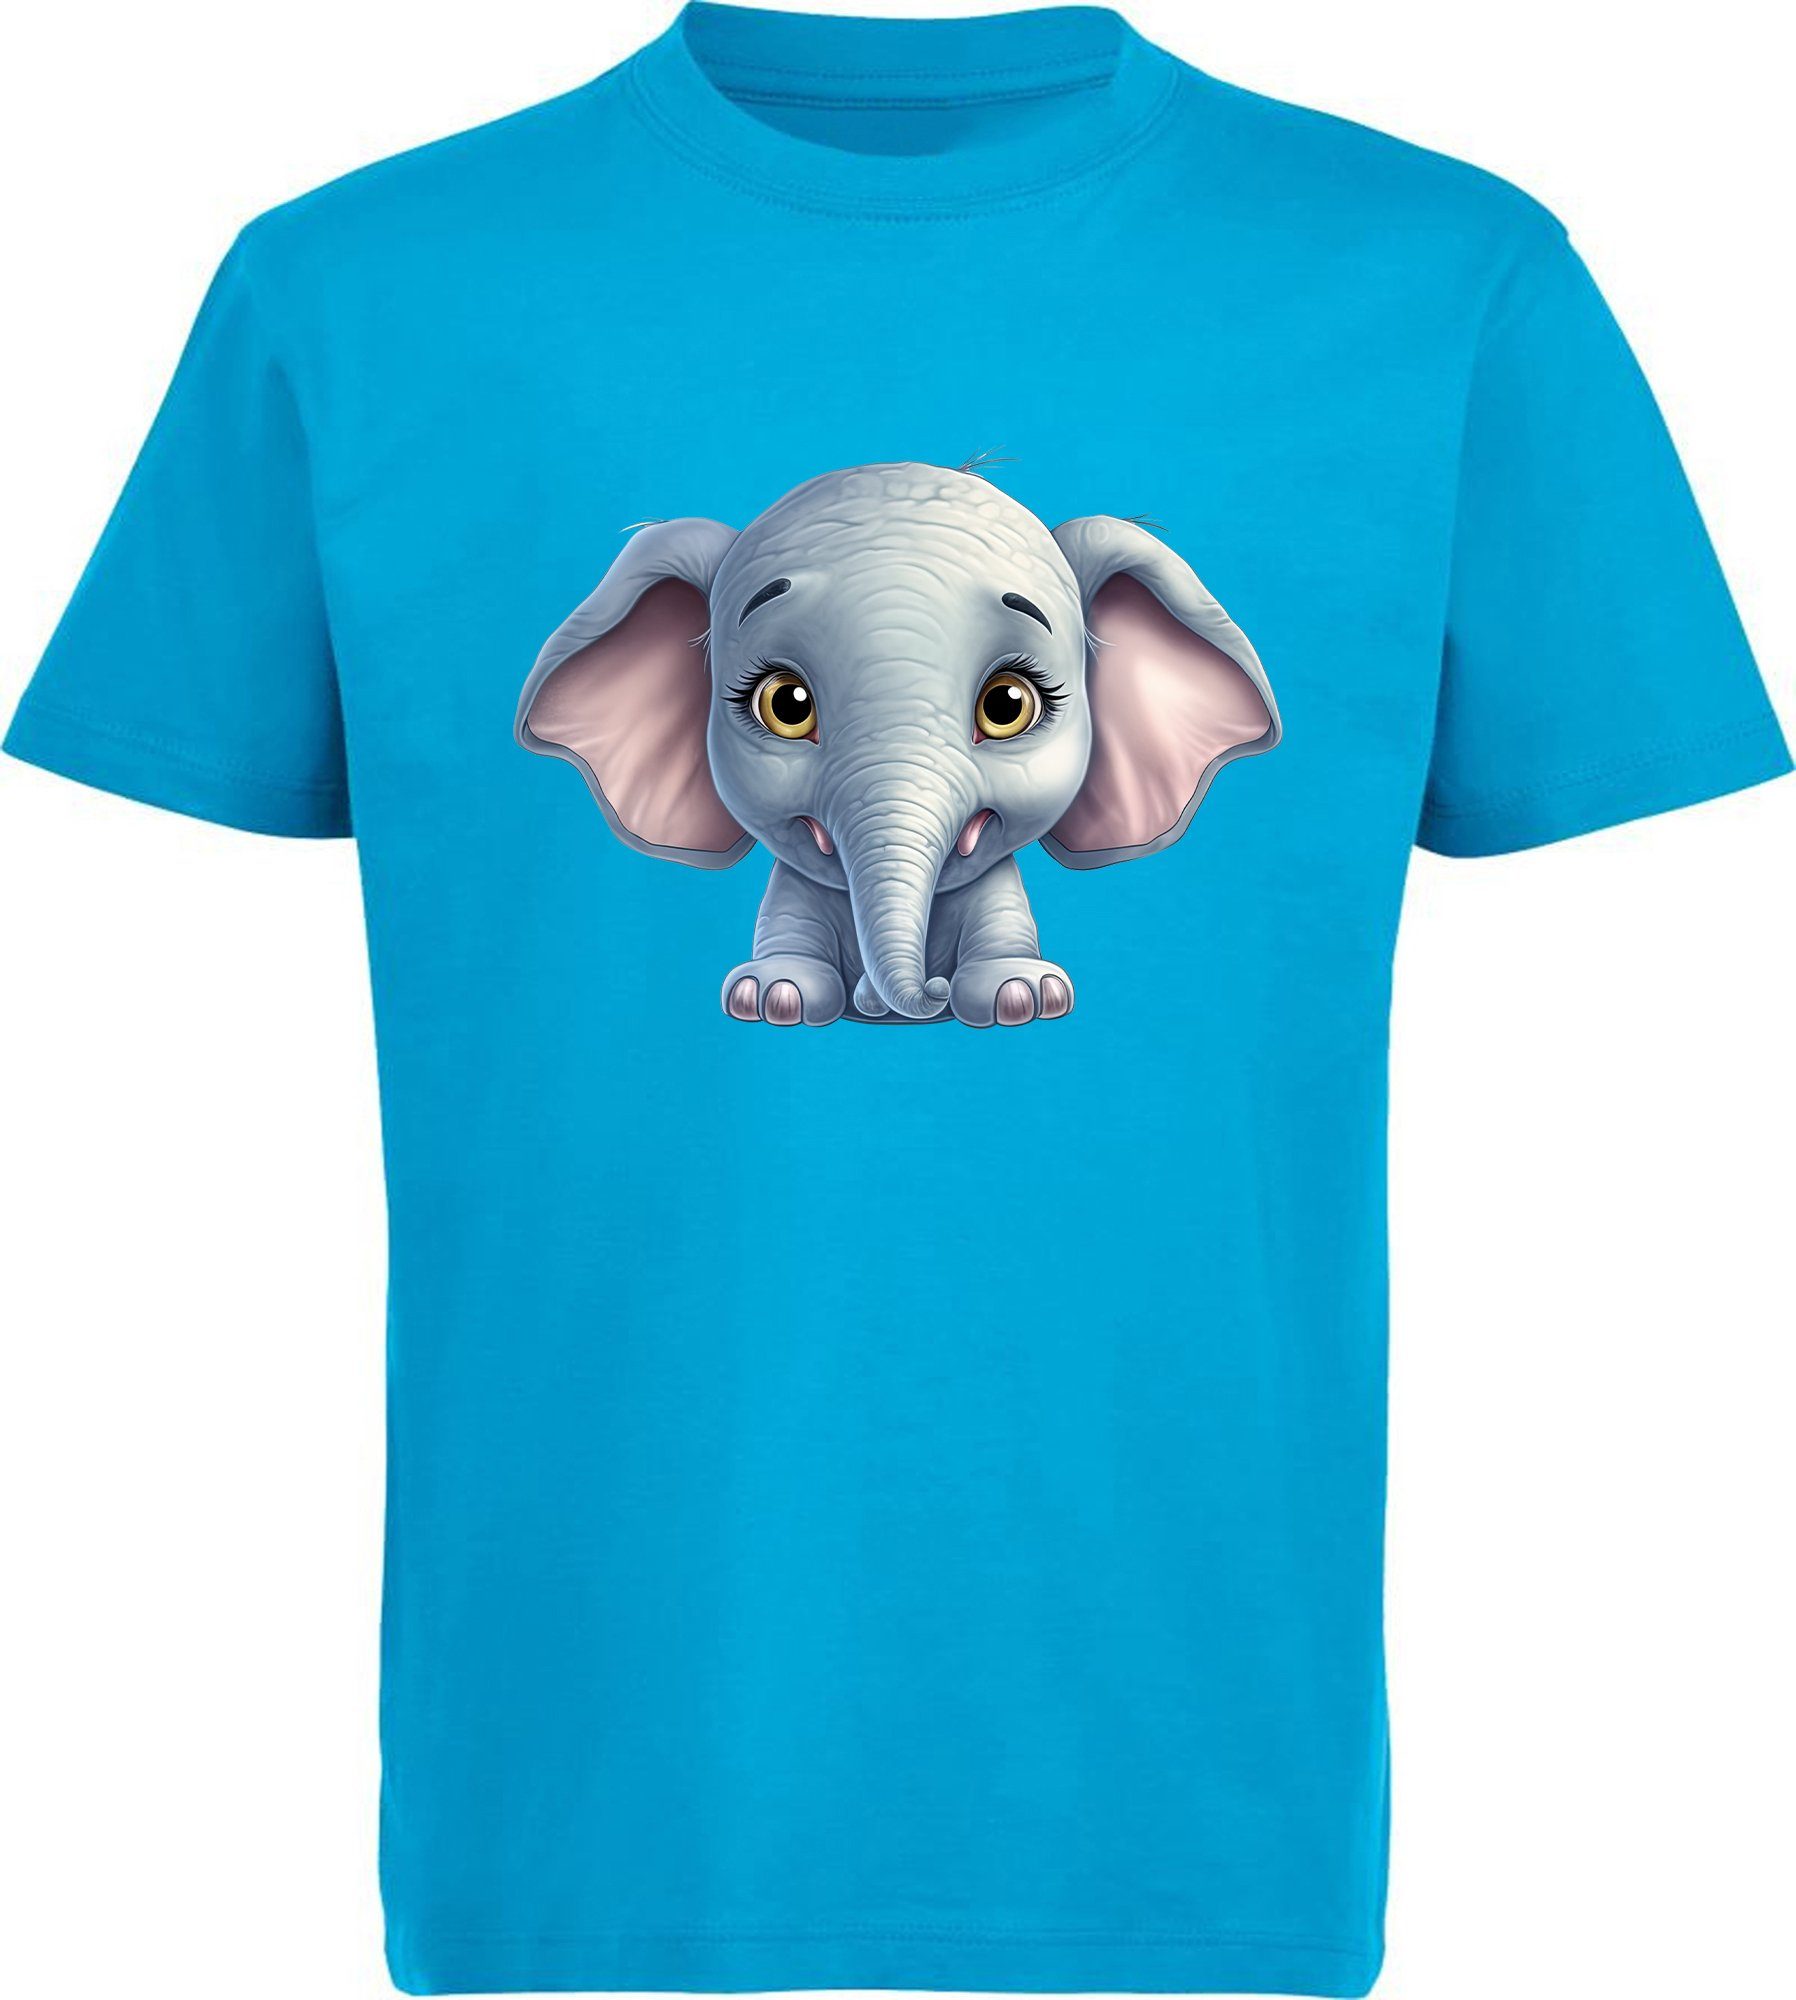 MyDesign24 T-Shirt Kinder Wildtier Print Shirt bedruckt - Baby Elefant Baumwollshirt mit Aufdruck, i272 aqua blau